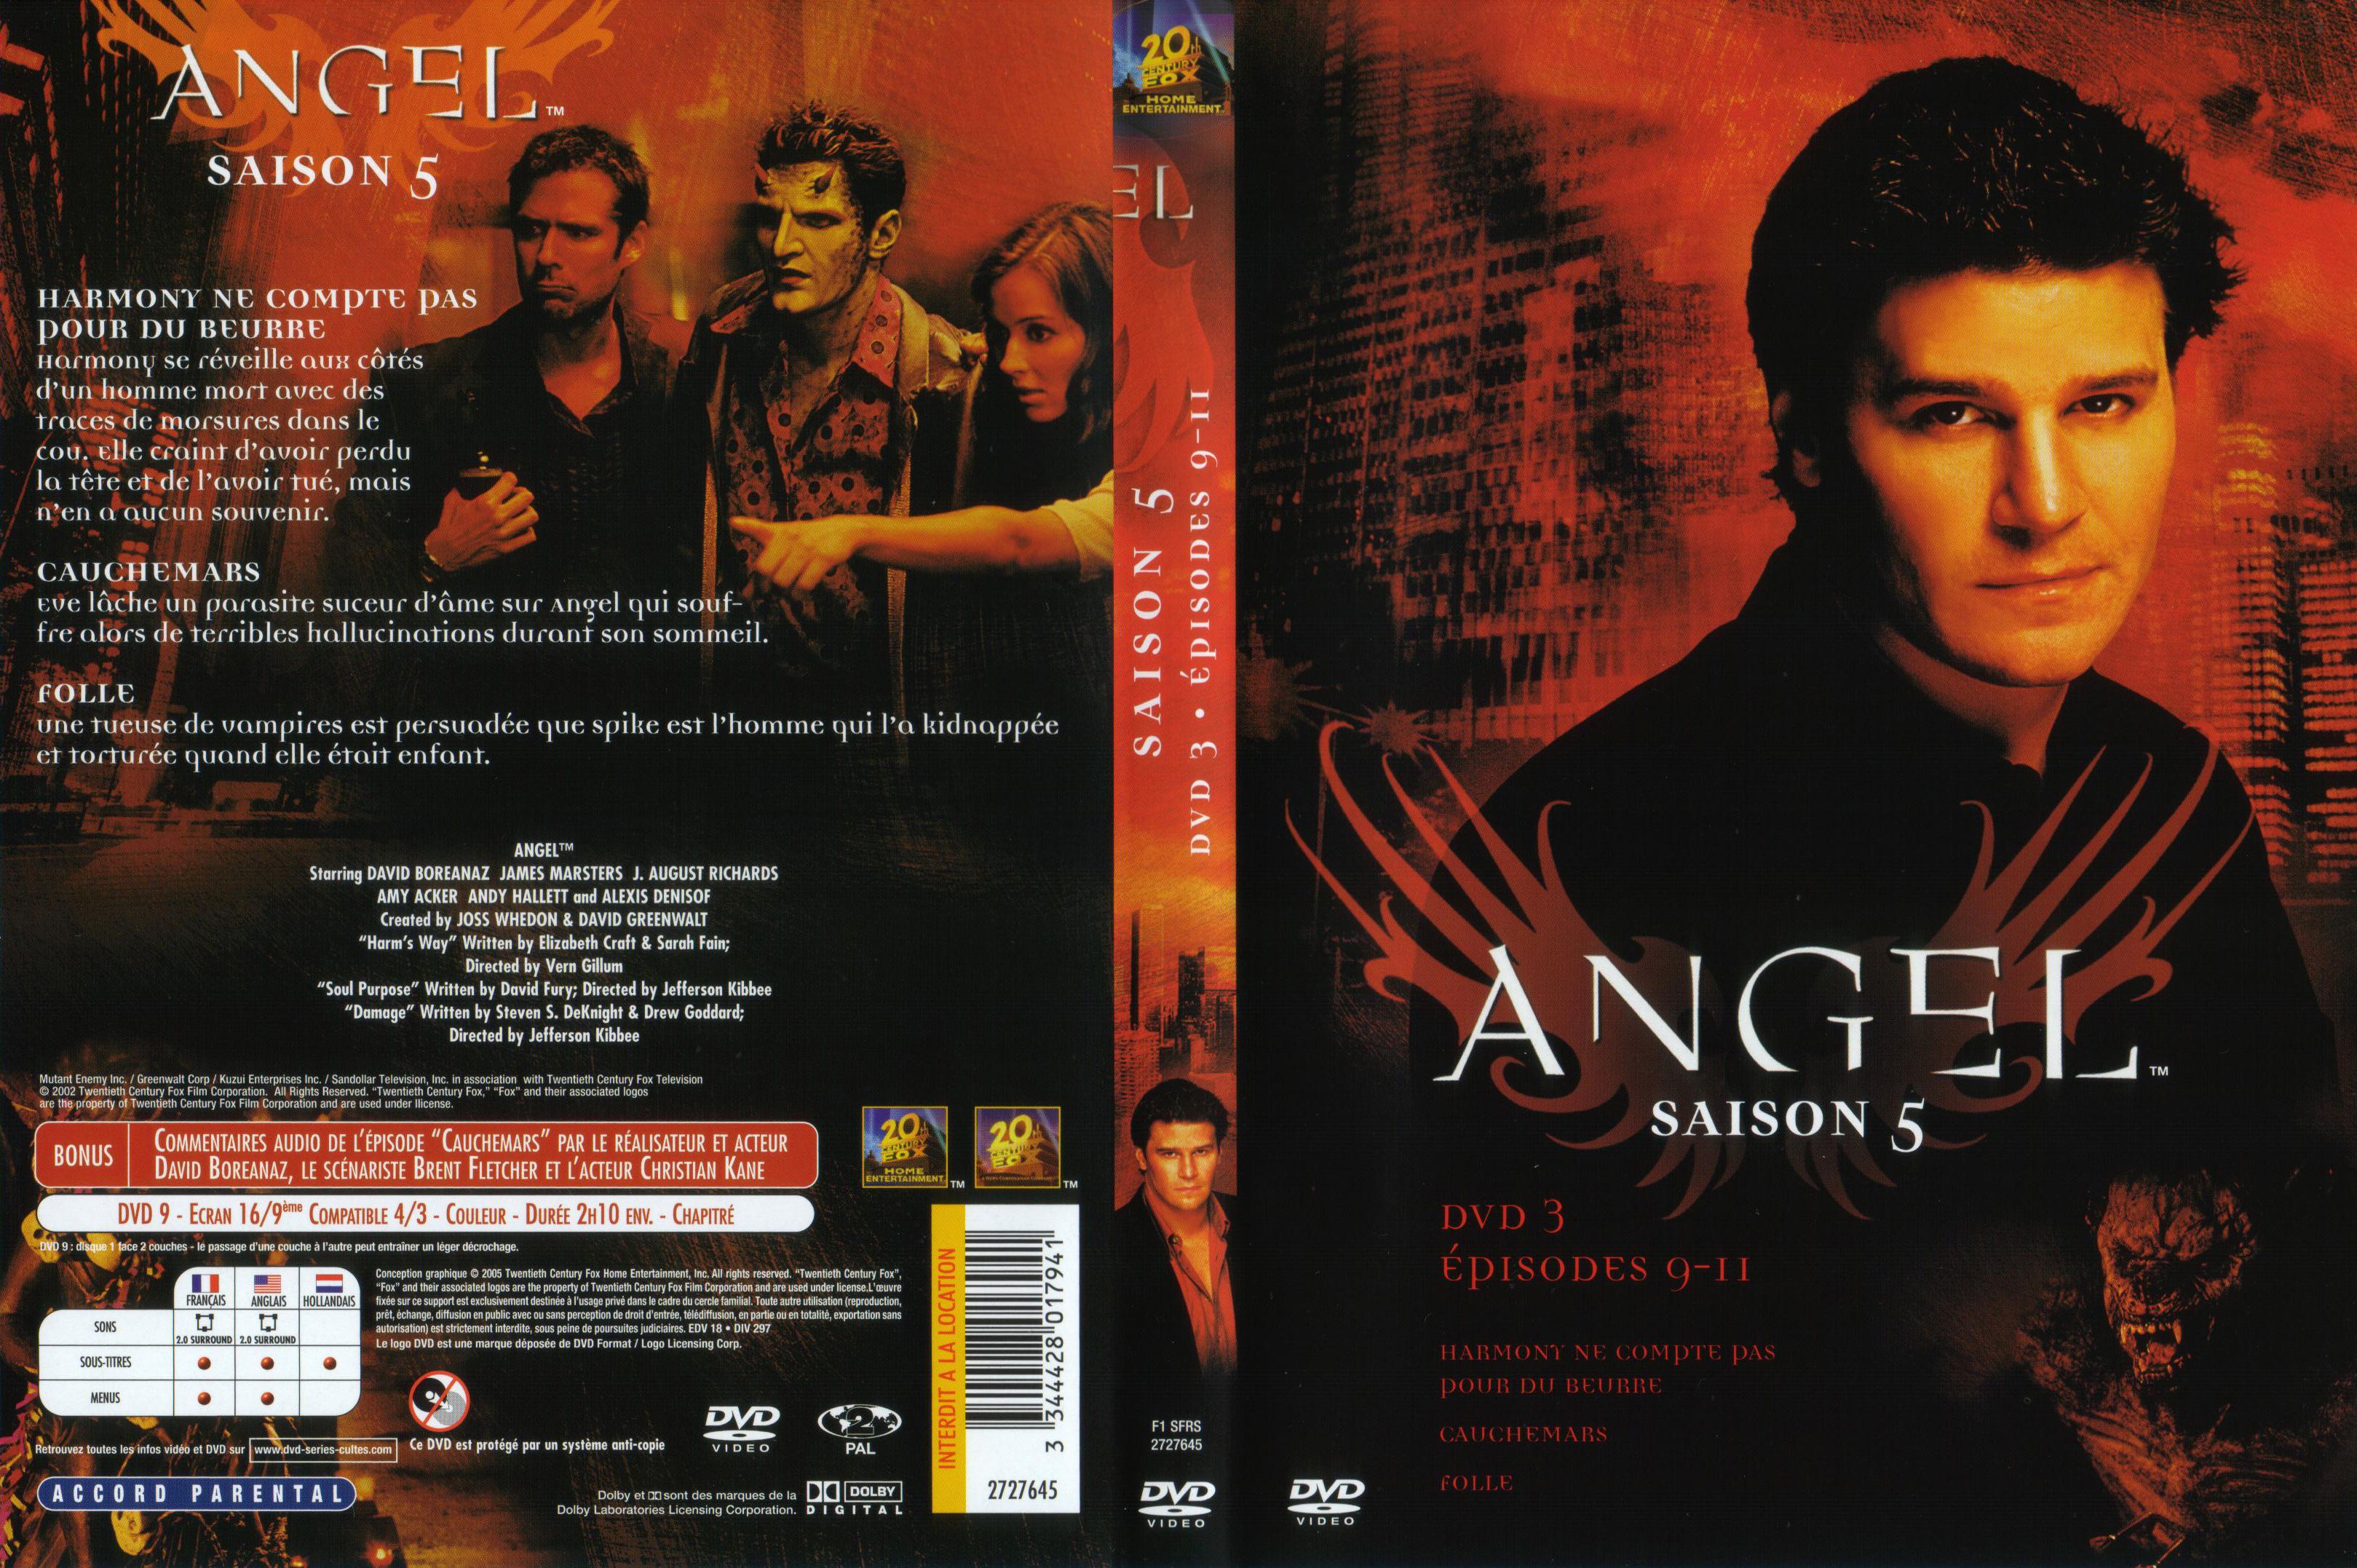 Jaquette DVD Angel Saison 5 dvd 3